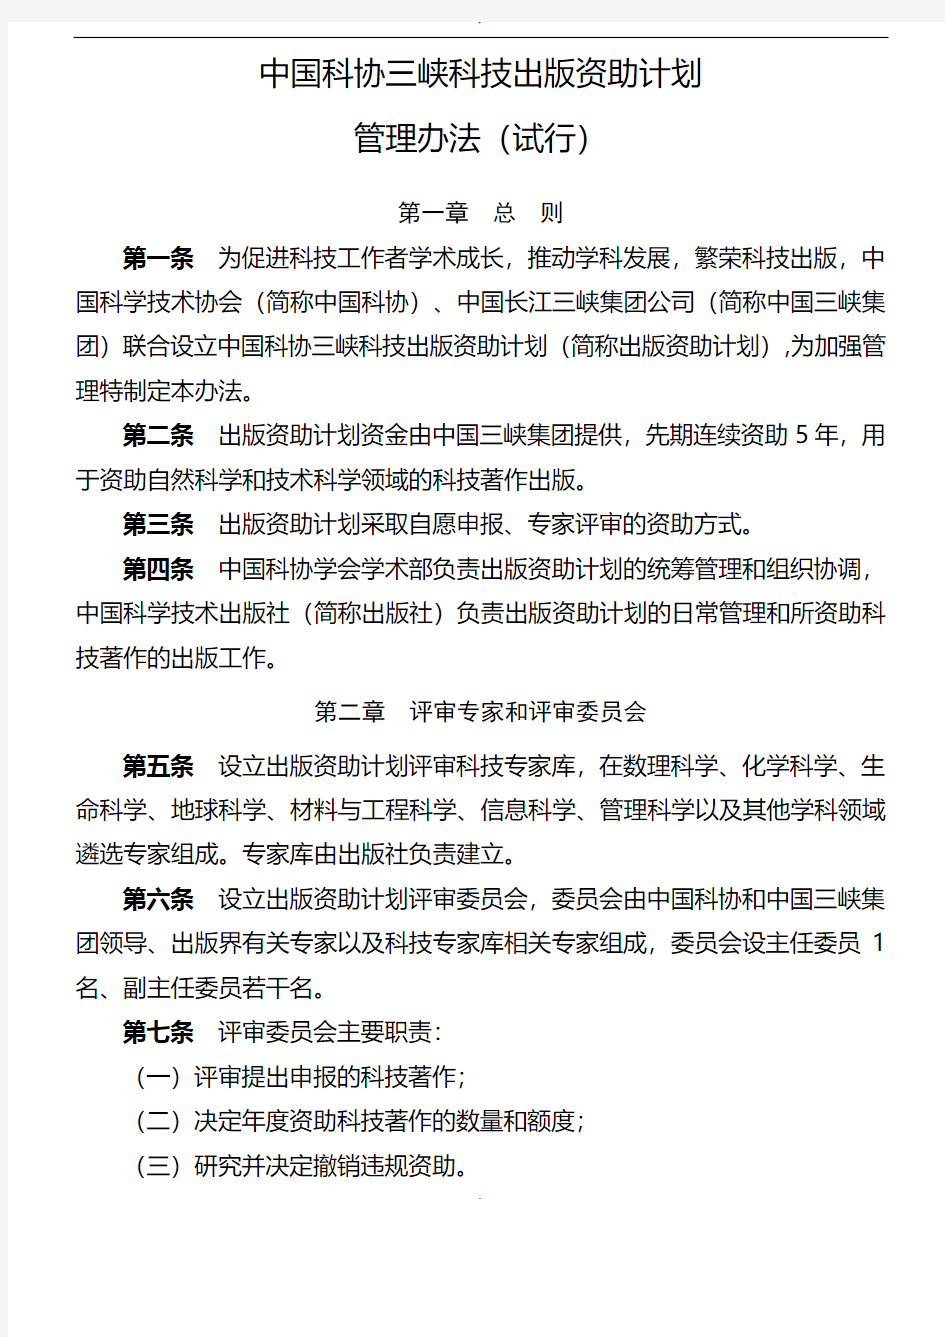 中国科协三峡科技出版资助计划管理办法(试行)